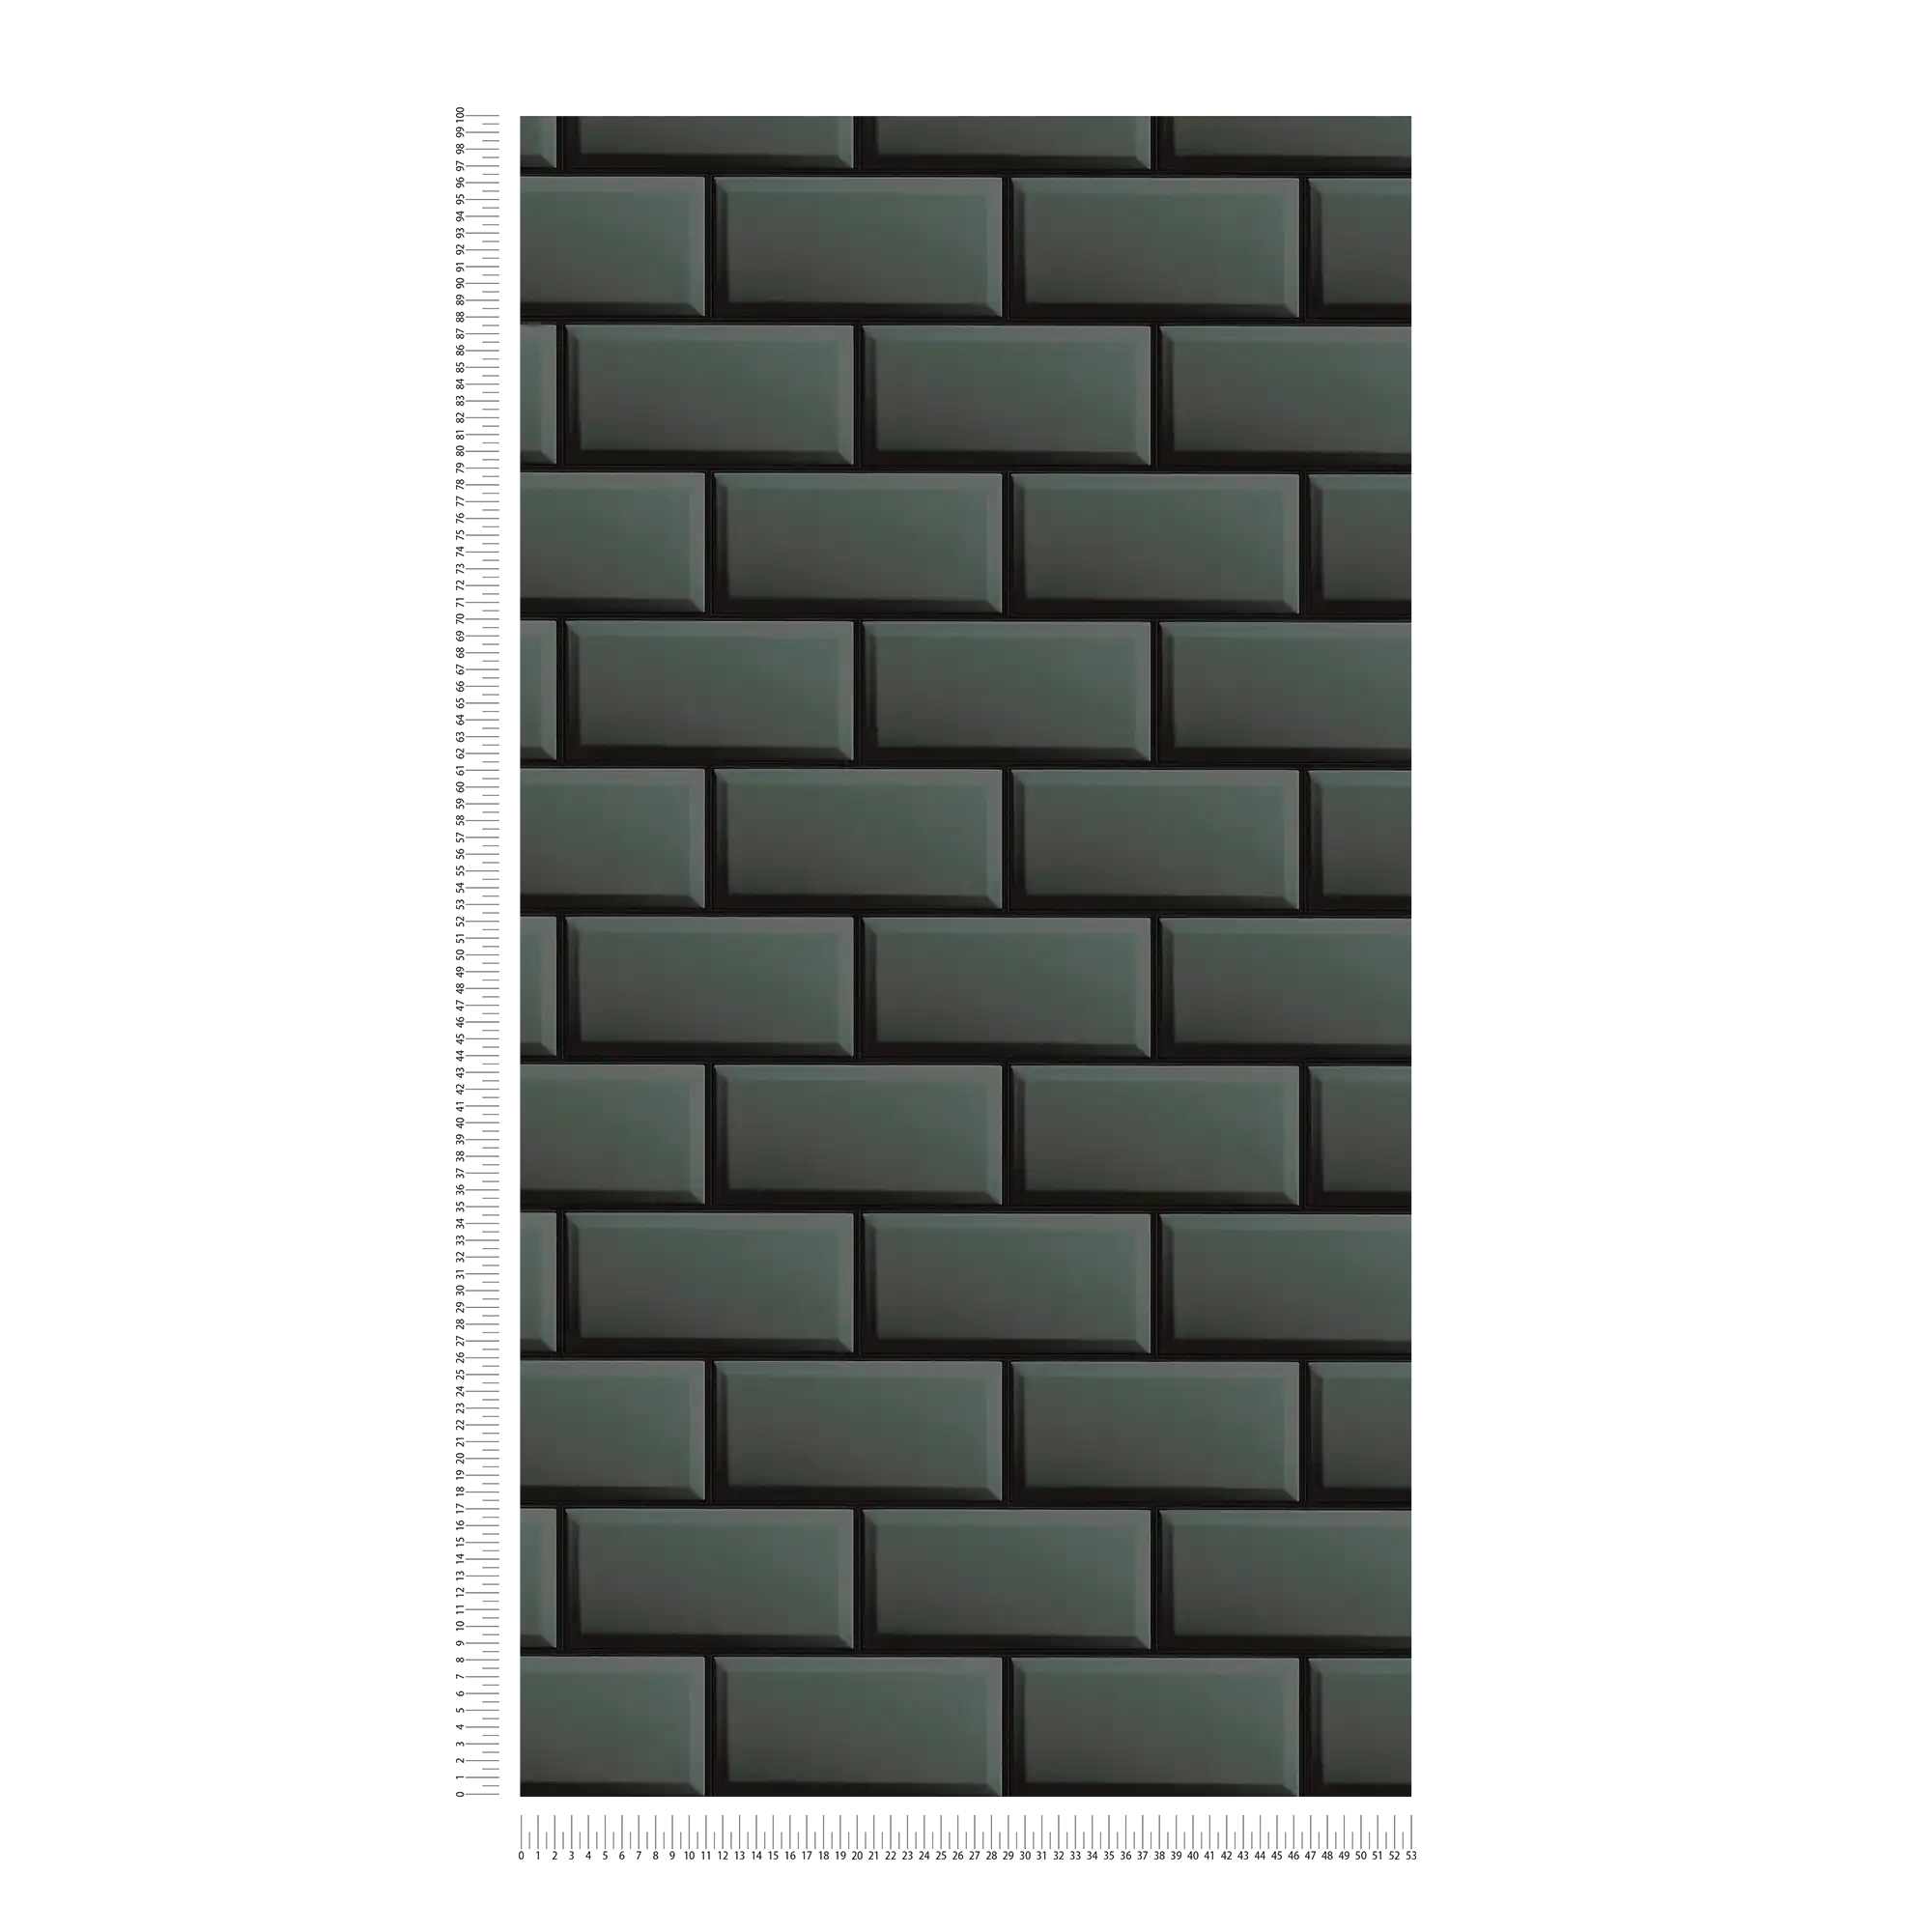             Non-woven wallpaper bathroom tiles in grey-black
        